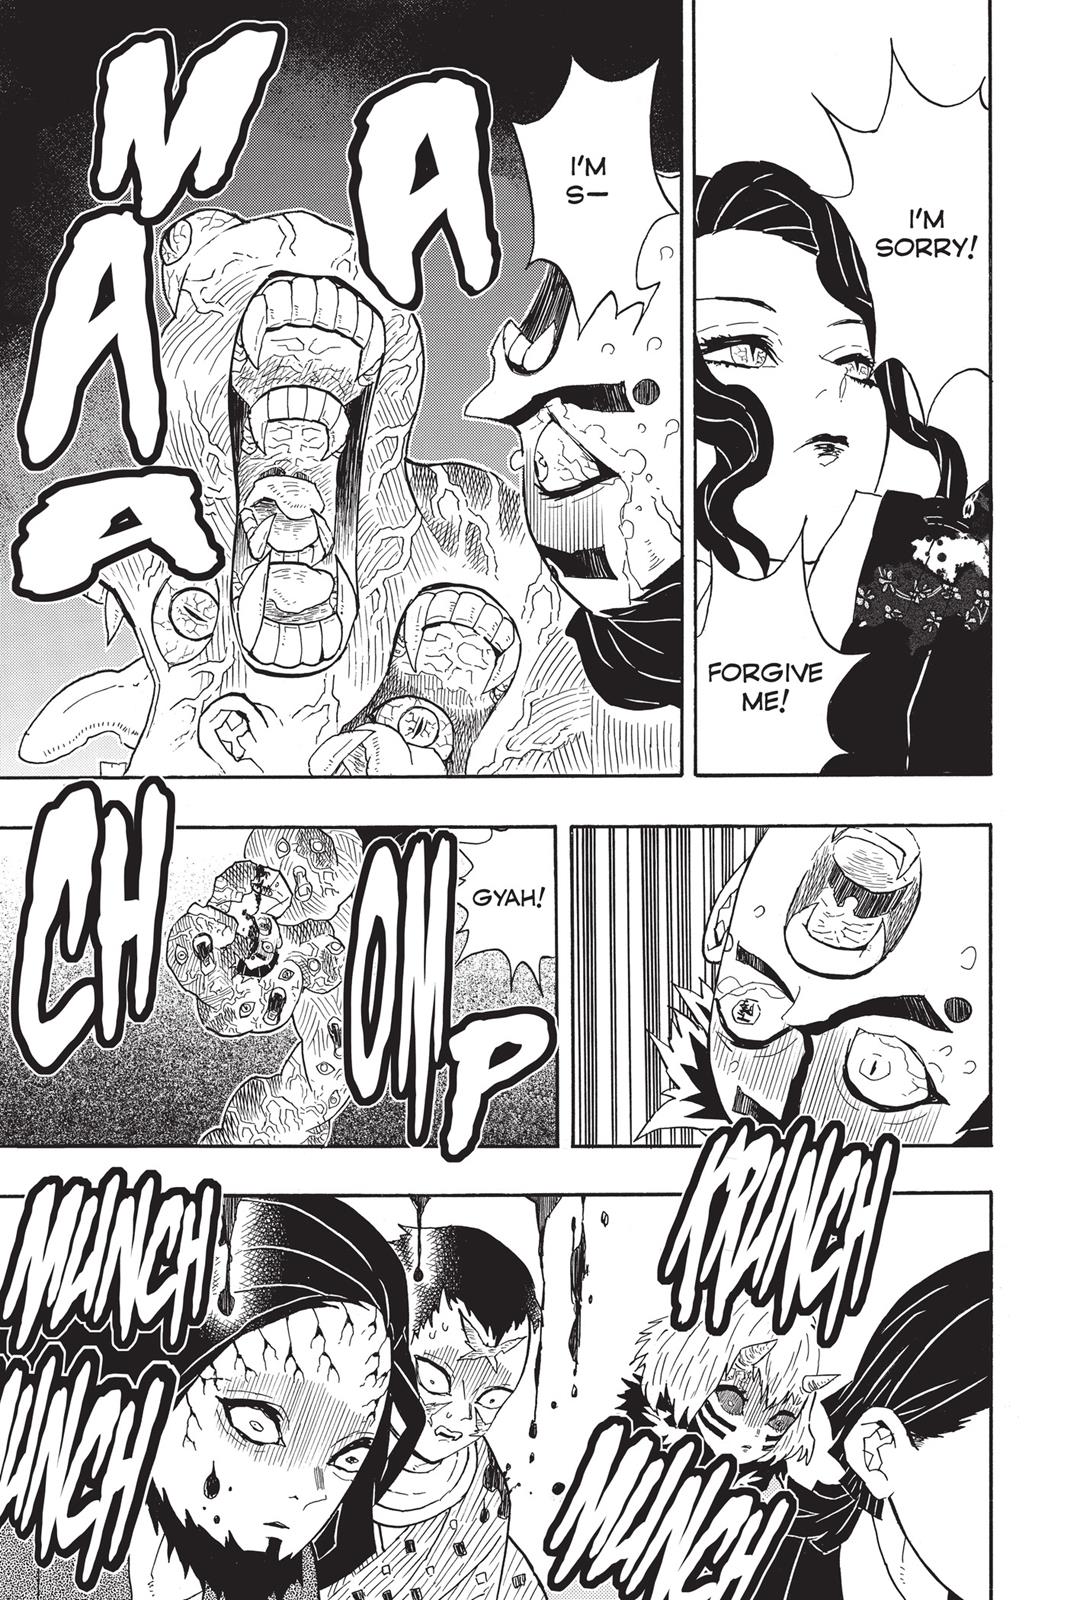 Demon Slayer Manga Manga Chapter - 52 - image 2